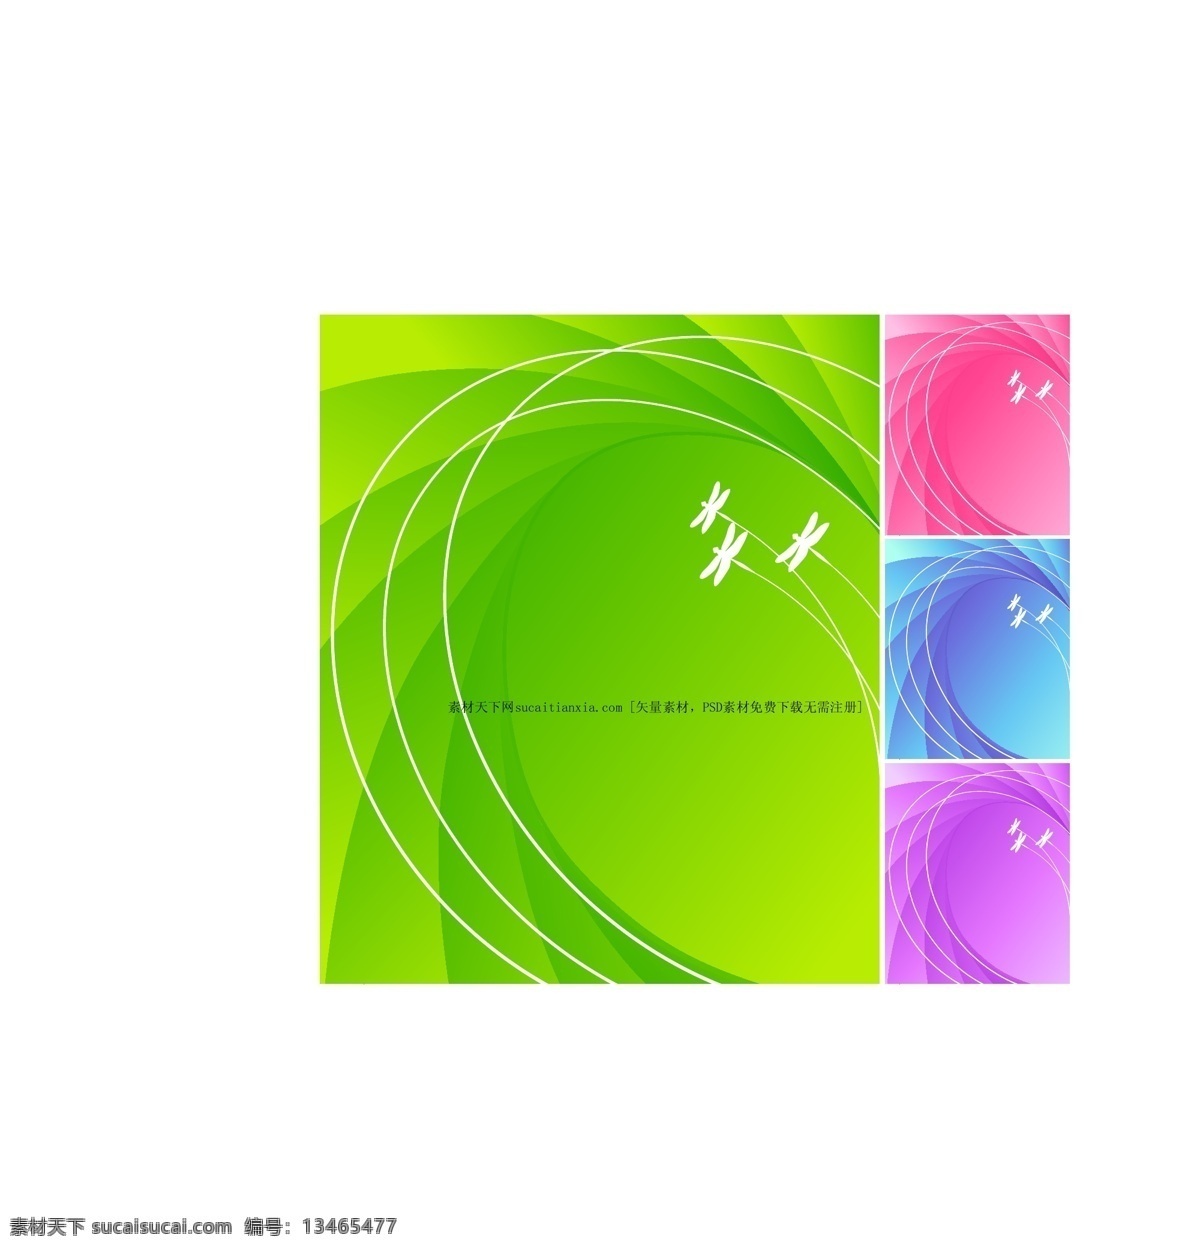 蜻蜓 飞行 轨迹 彩色 系列 背景 矢量 弧线 剪影 四色 矢量图 其他矢量图